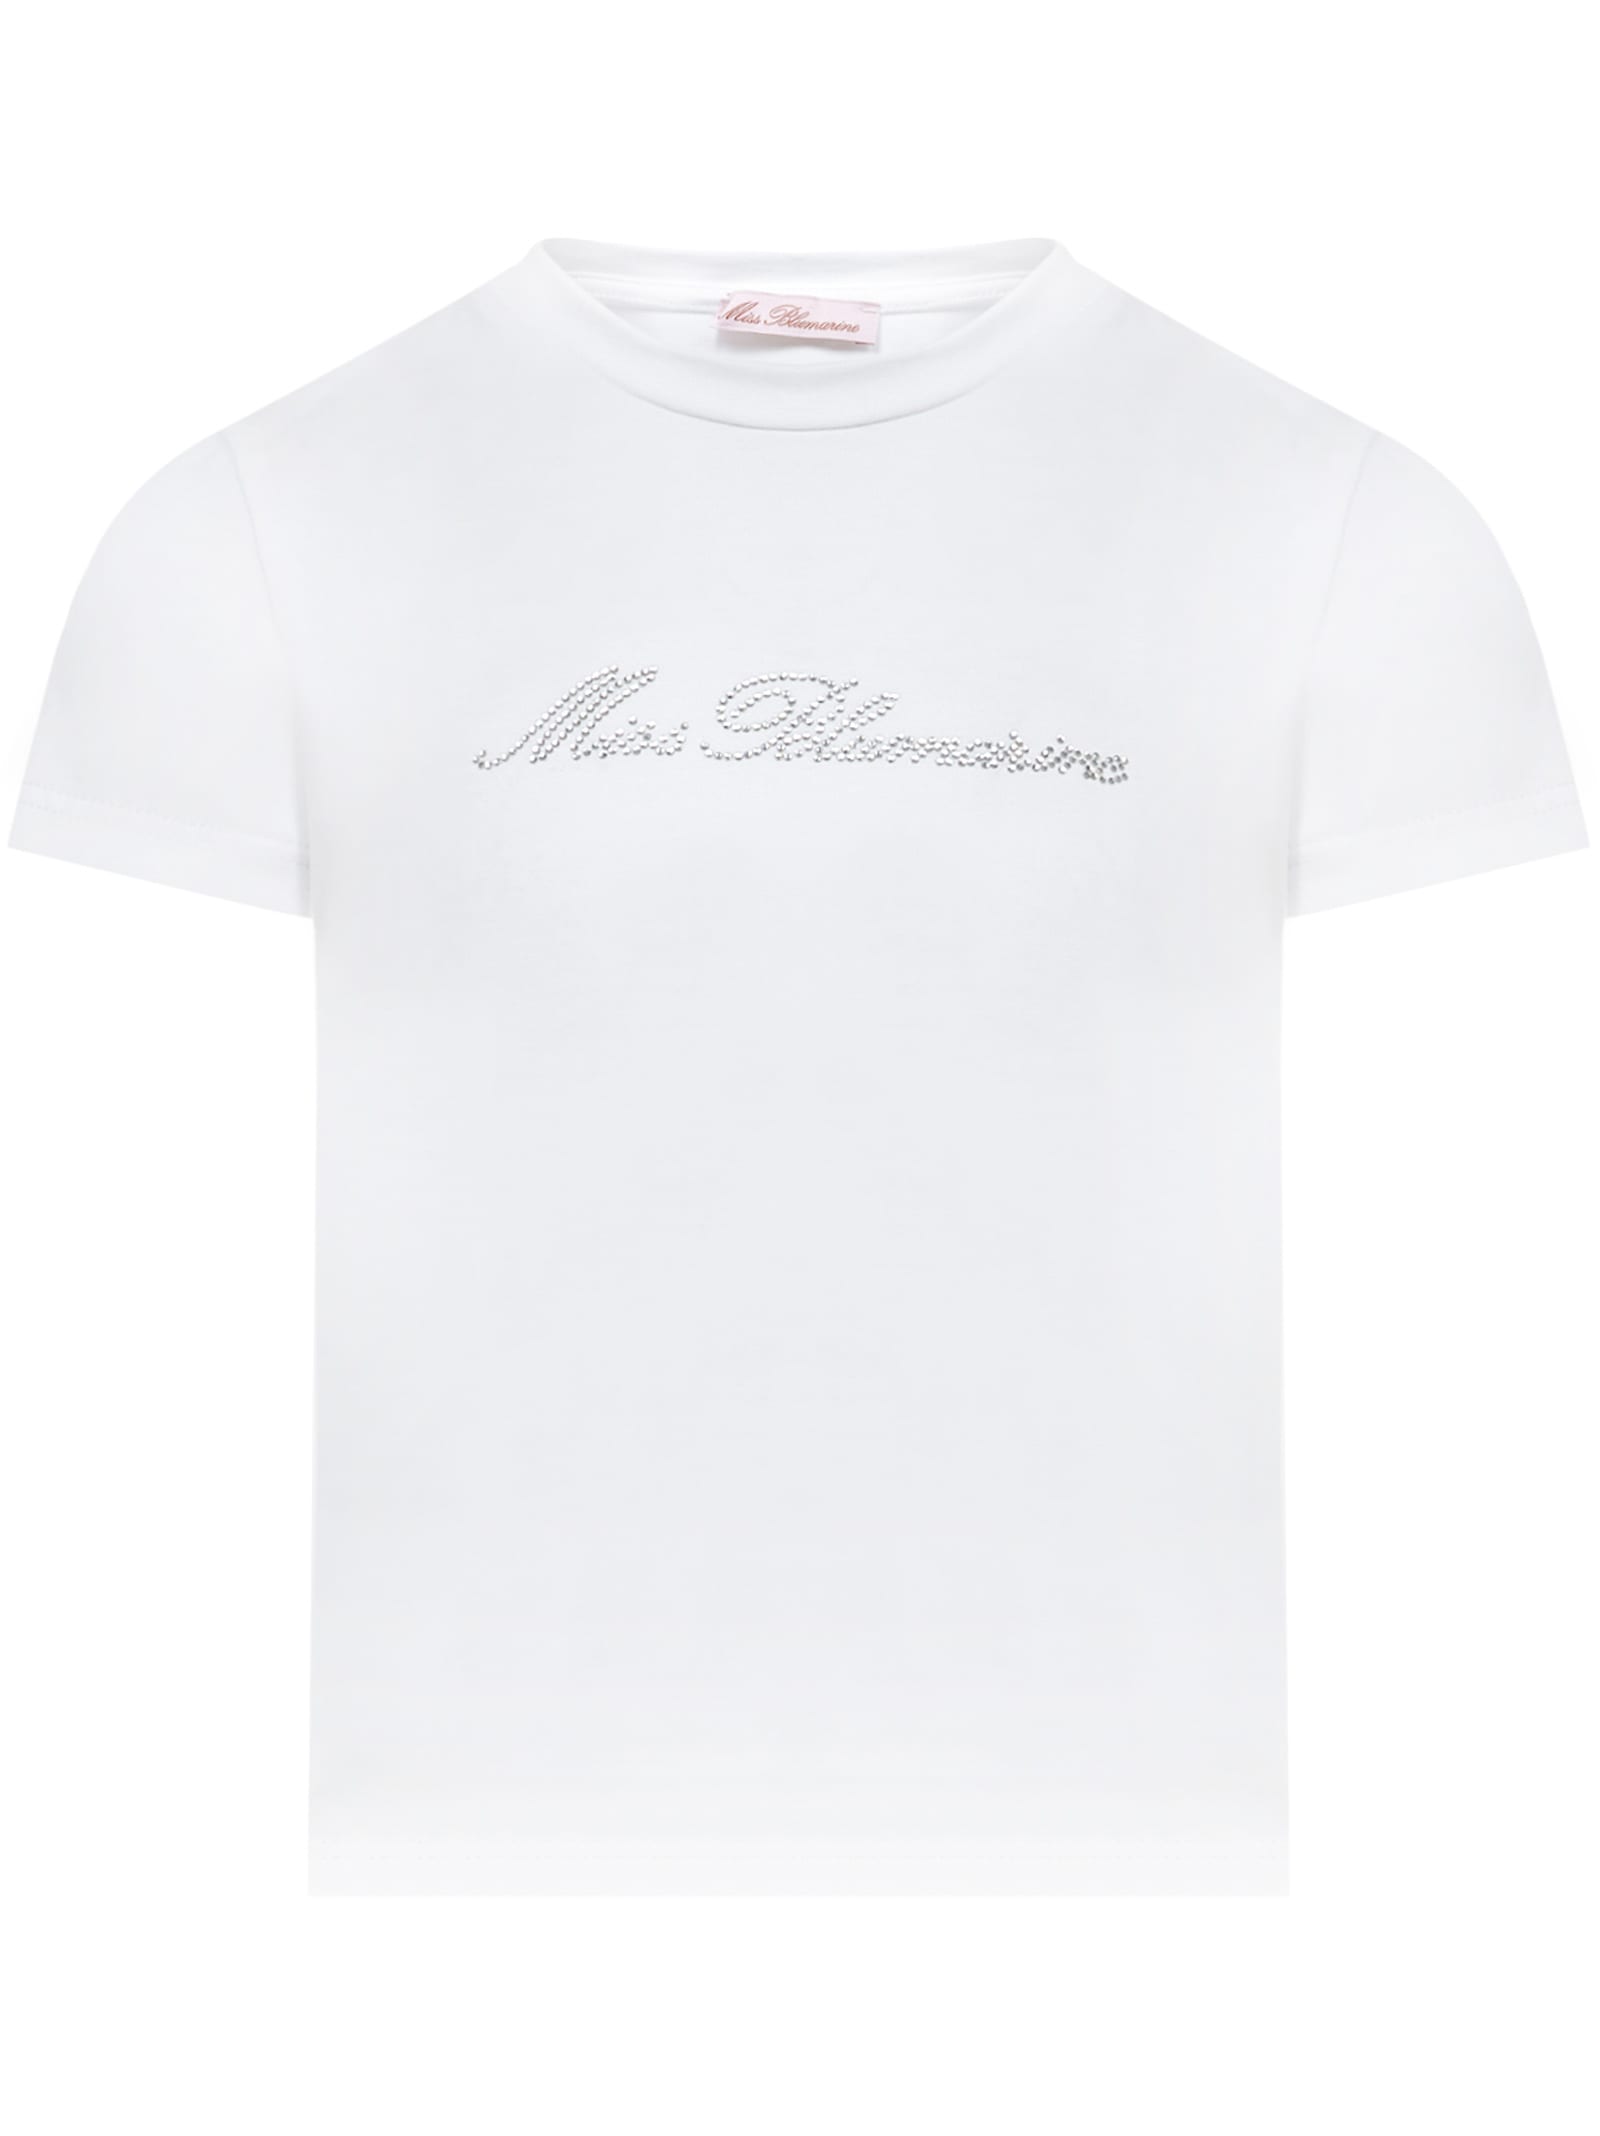 Miss Blumarine Kids' T-shirt In White